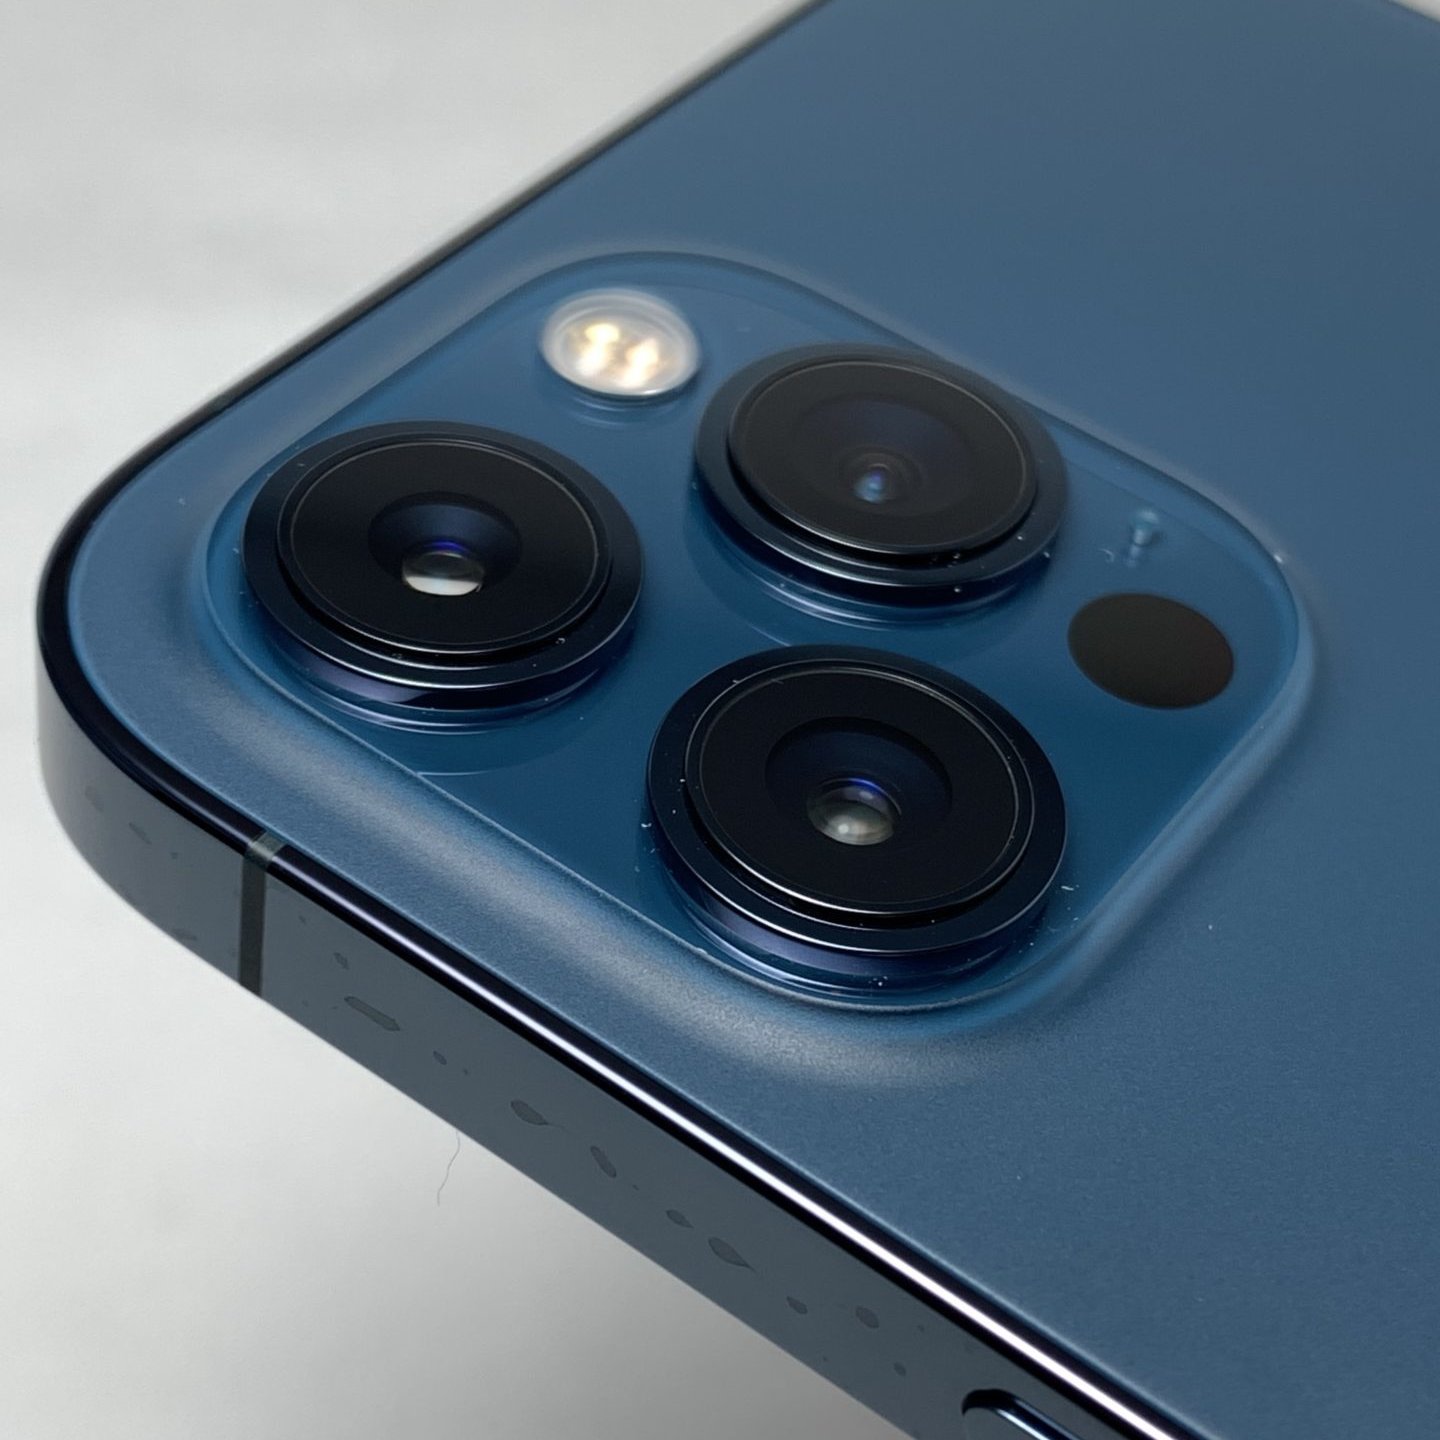 21年最新 Iphone 12 Pro Max おすすめカメラレンズ保護アルミ合金カバーレビュー Nimaso 2枚セット どたんば で 夢をつかむブログ